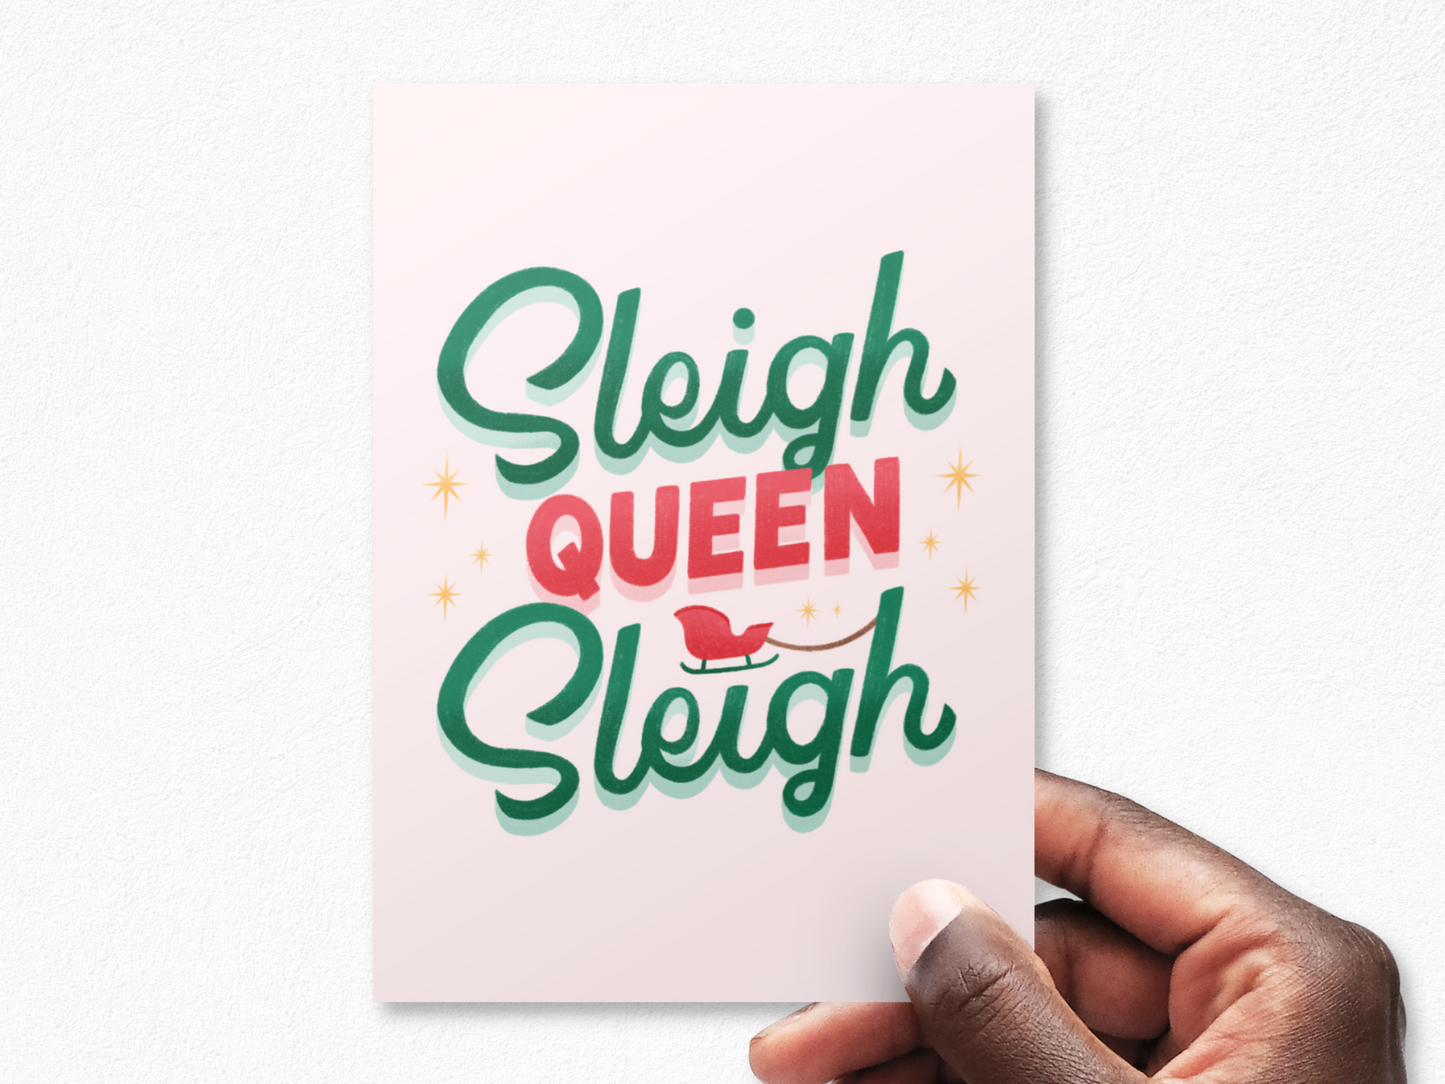 Sleigh Queen Sleigh! Christmas Postcard Pack